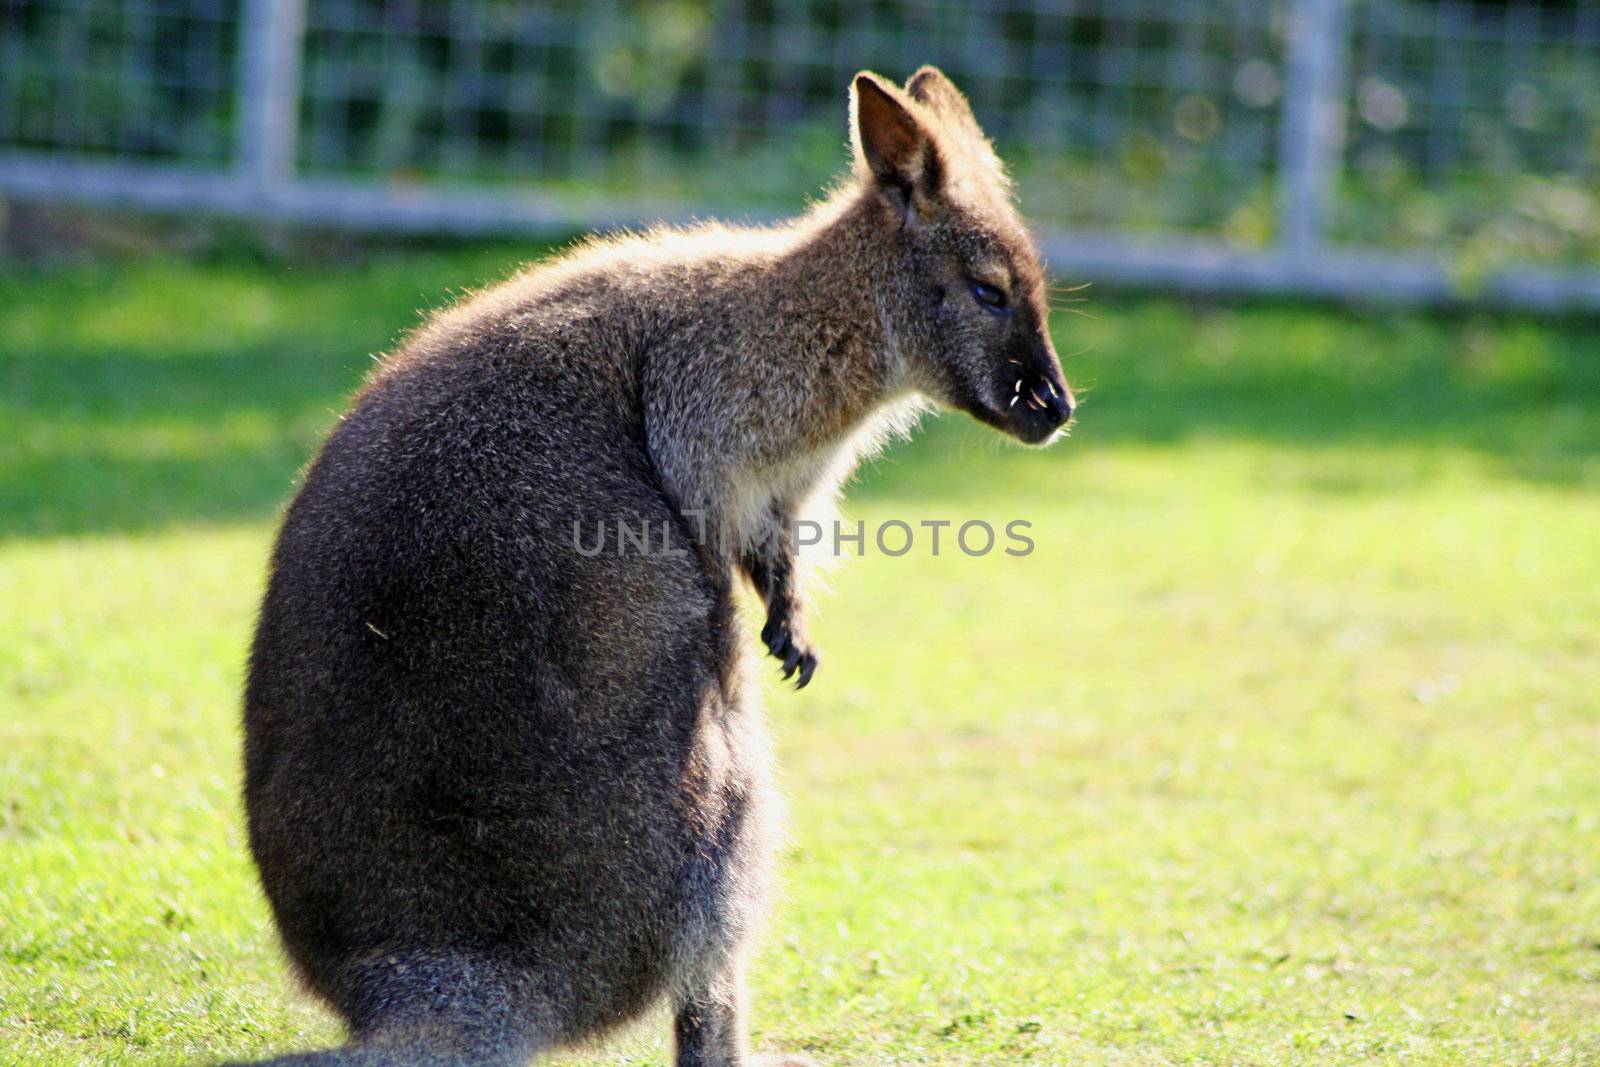 wallaby in a field